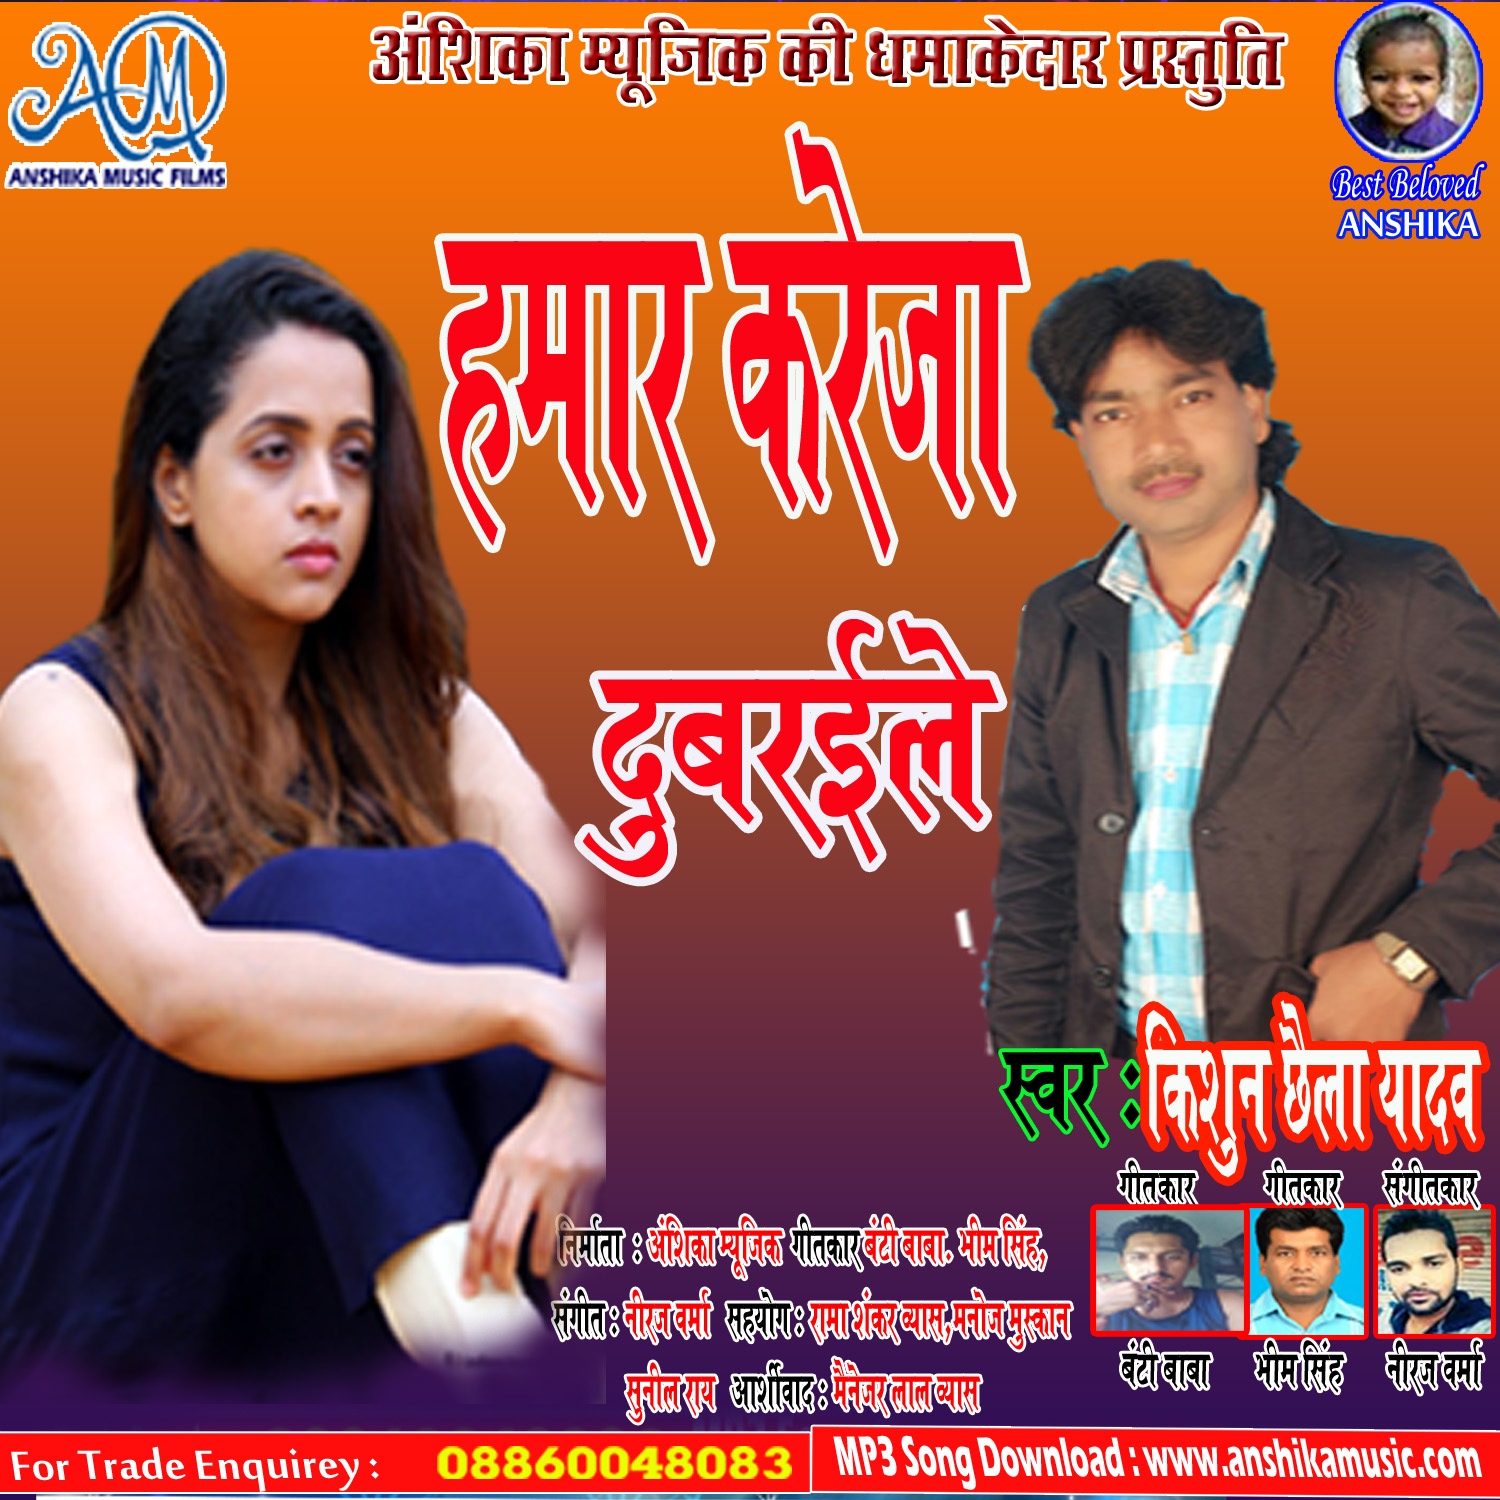 Album -Hamaar Kreja Dubraile -singer kishun chhaila yadav  ()8860048083 - Anshika Music